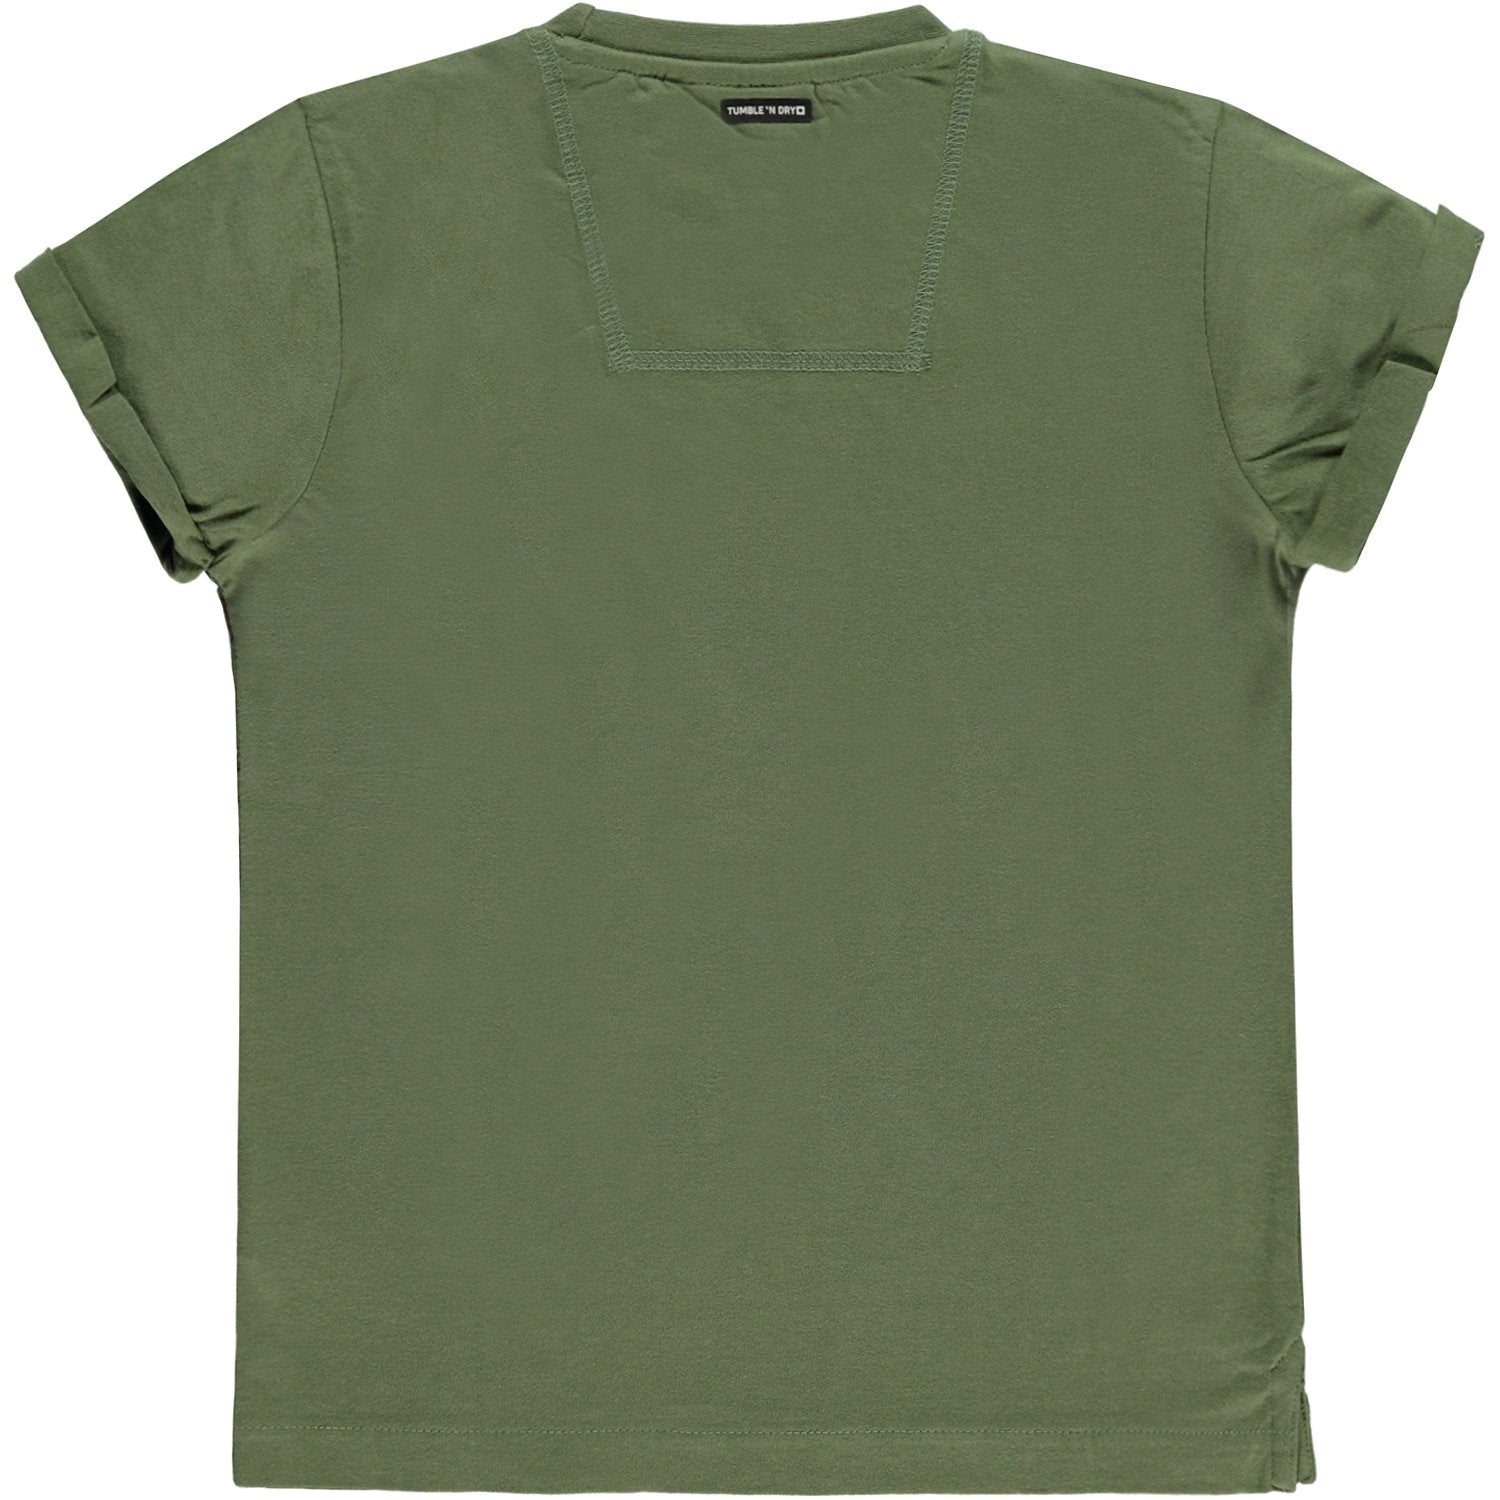 Jongens T-shirt Km O-hals van Tumble 'n Dry in de kleur Vineyard green in maat 128.